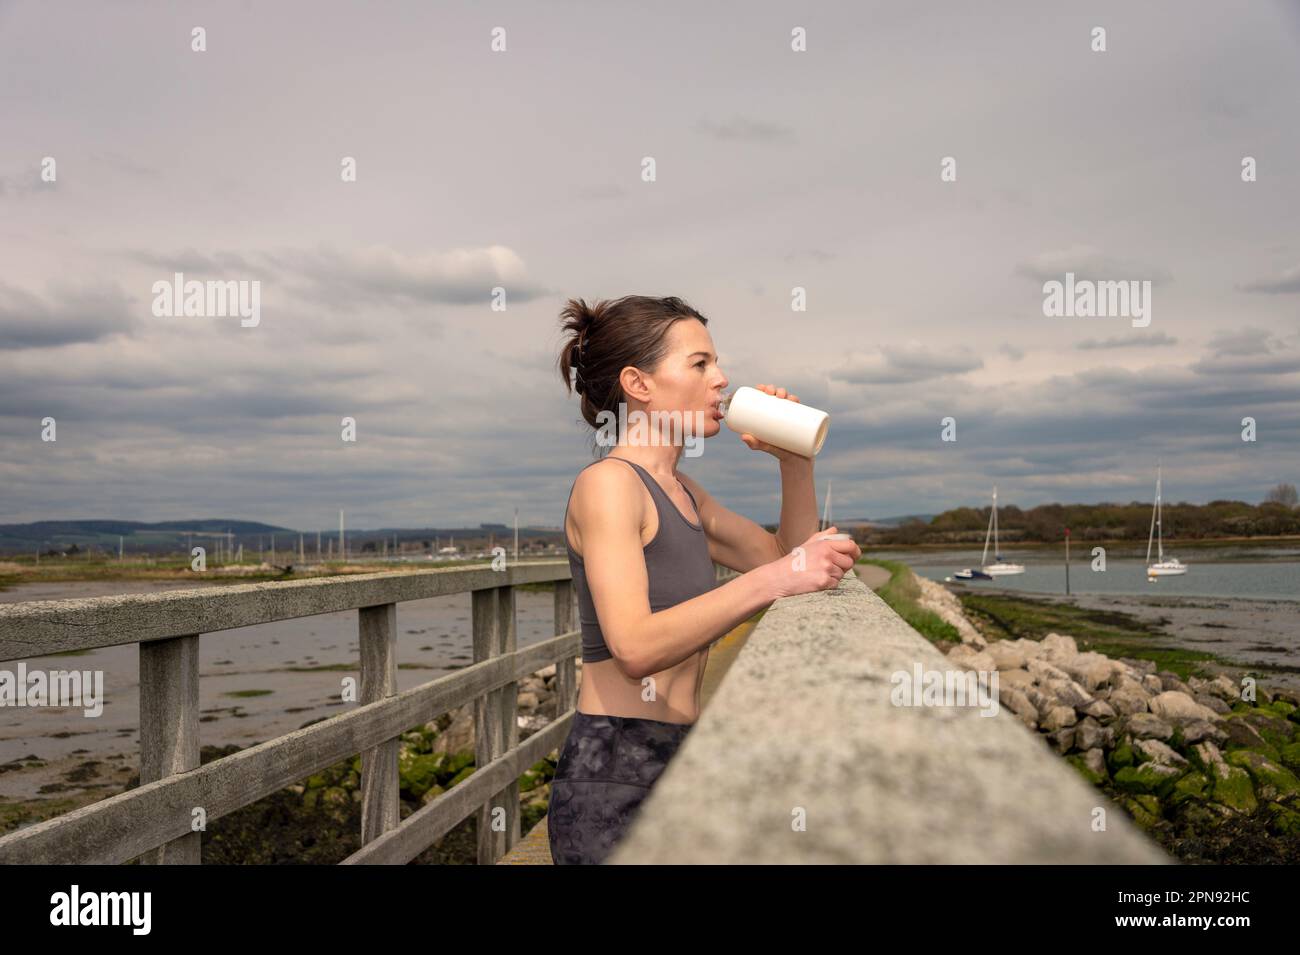 deportista bebiendo agua de la botella después del entrenamiento, descansando en un puente por la costa Foto de stock